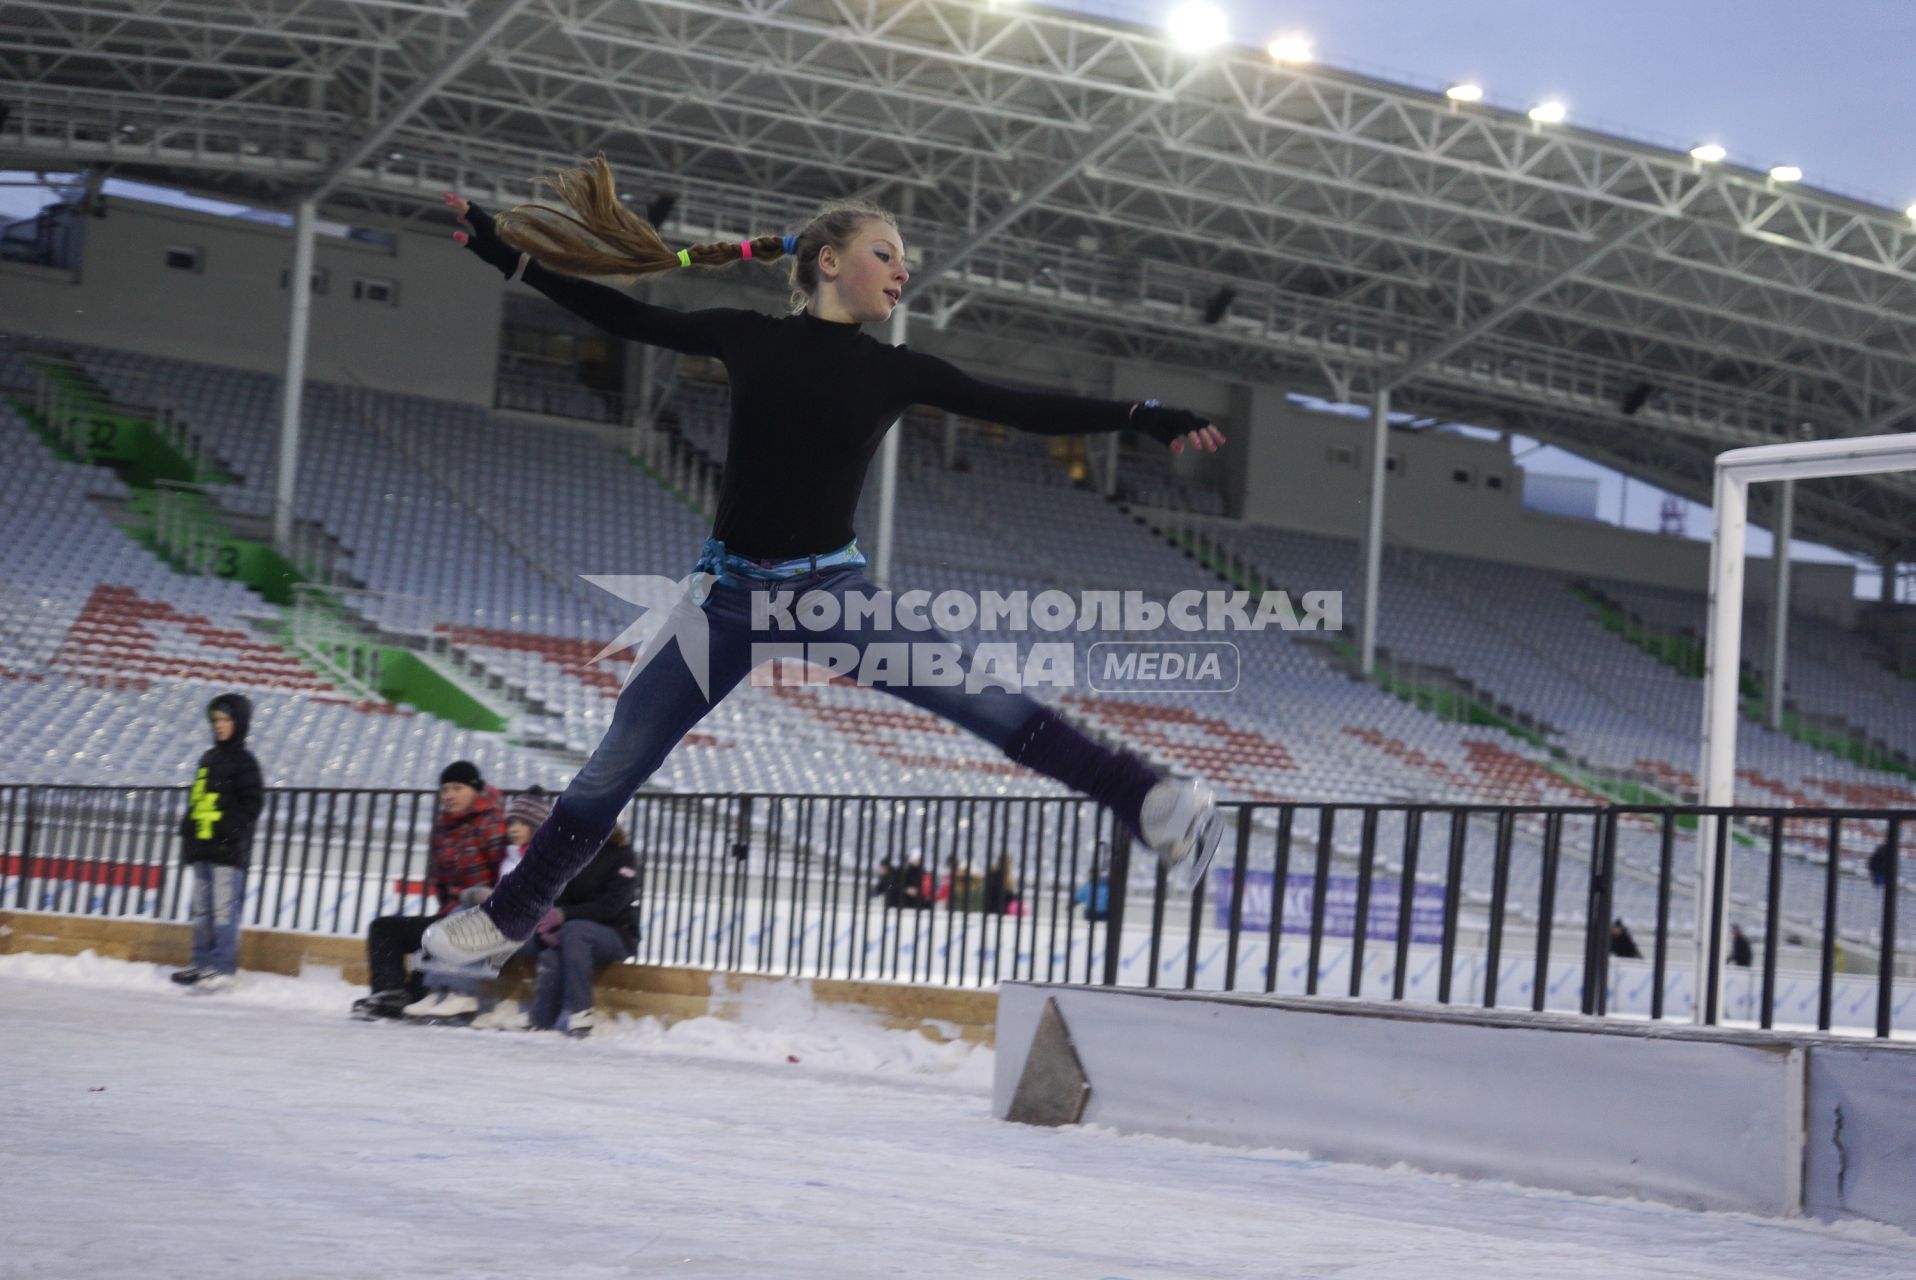 Каток на центральном стадионе Екатеринбурга. На снимке: девушка выполняет прыжок на коньках.